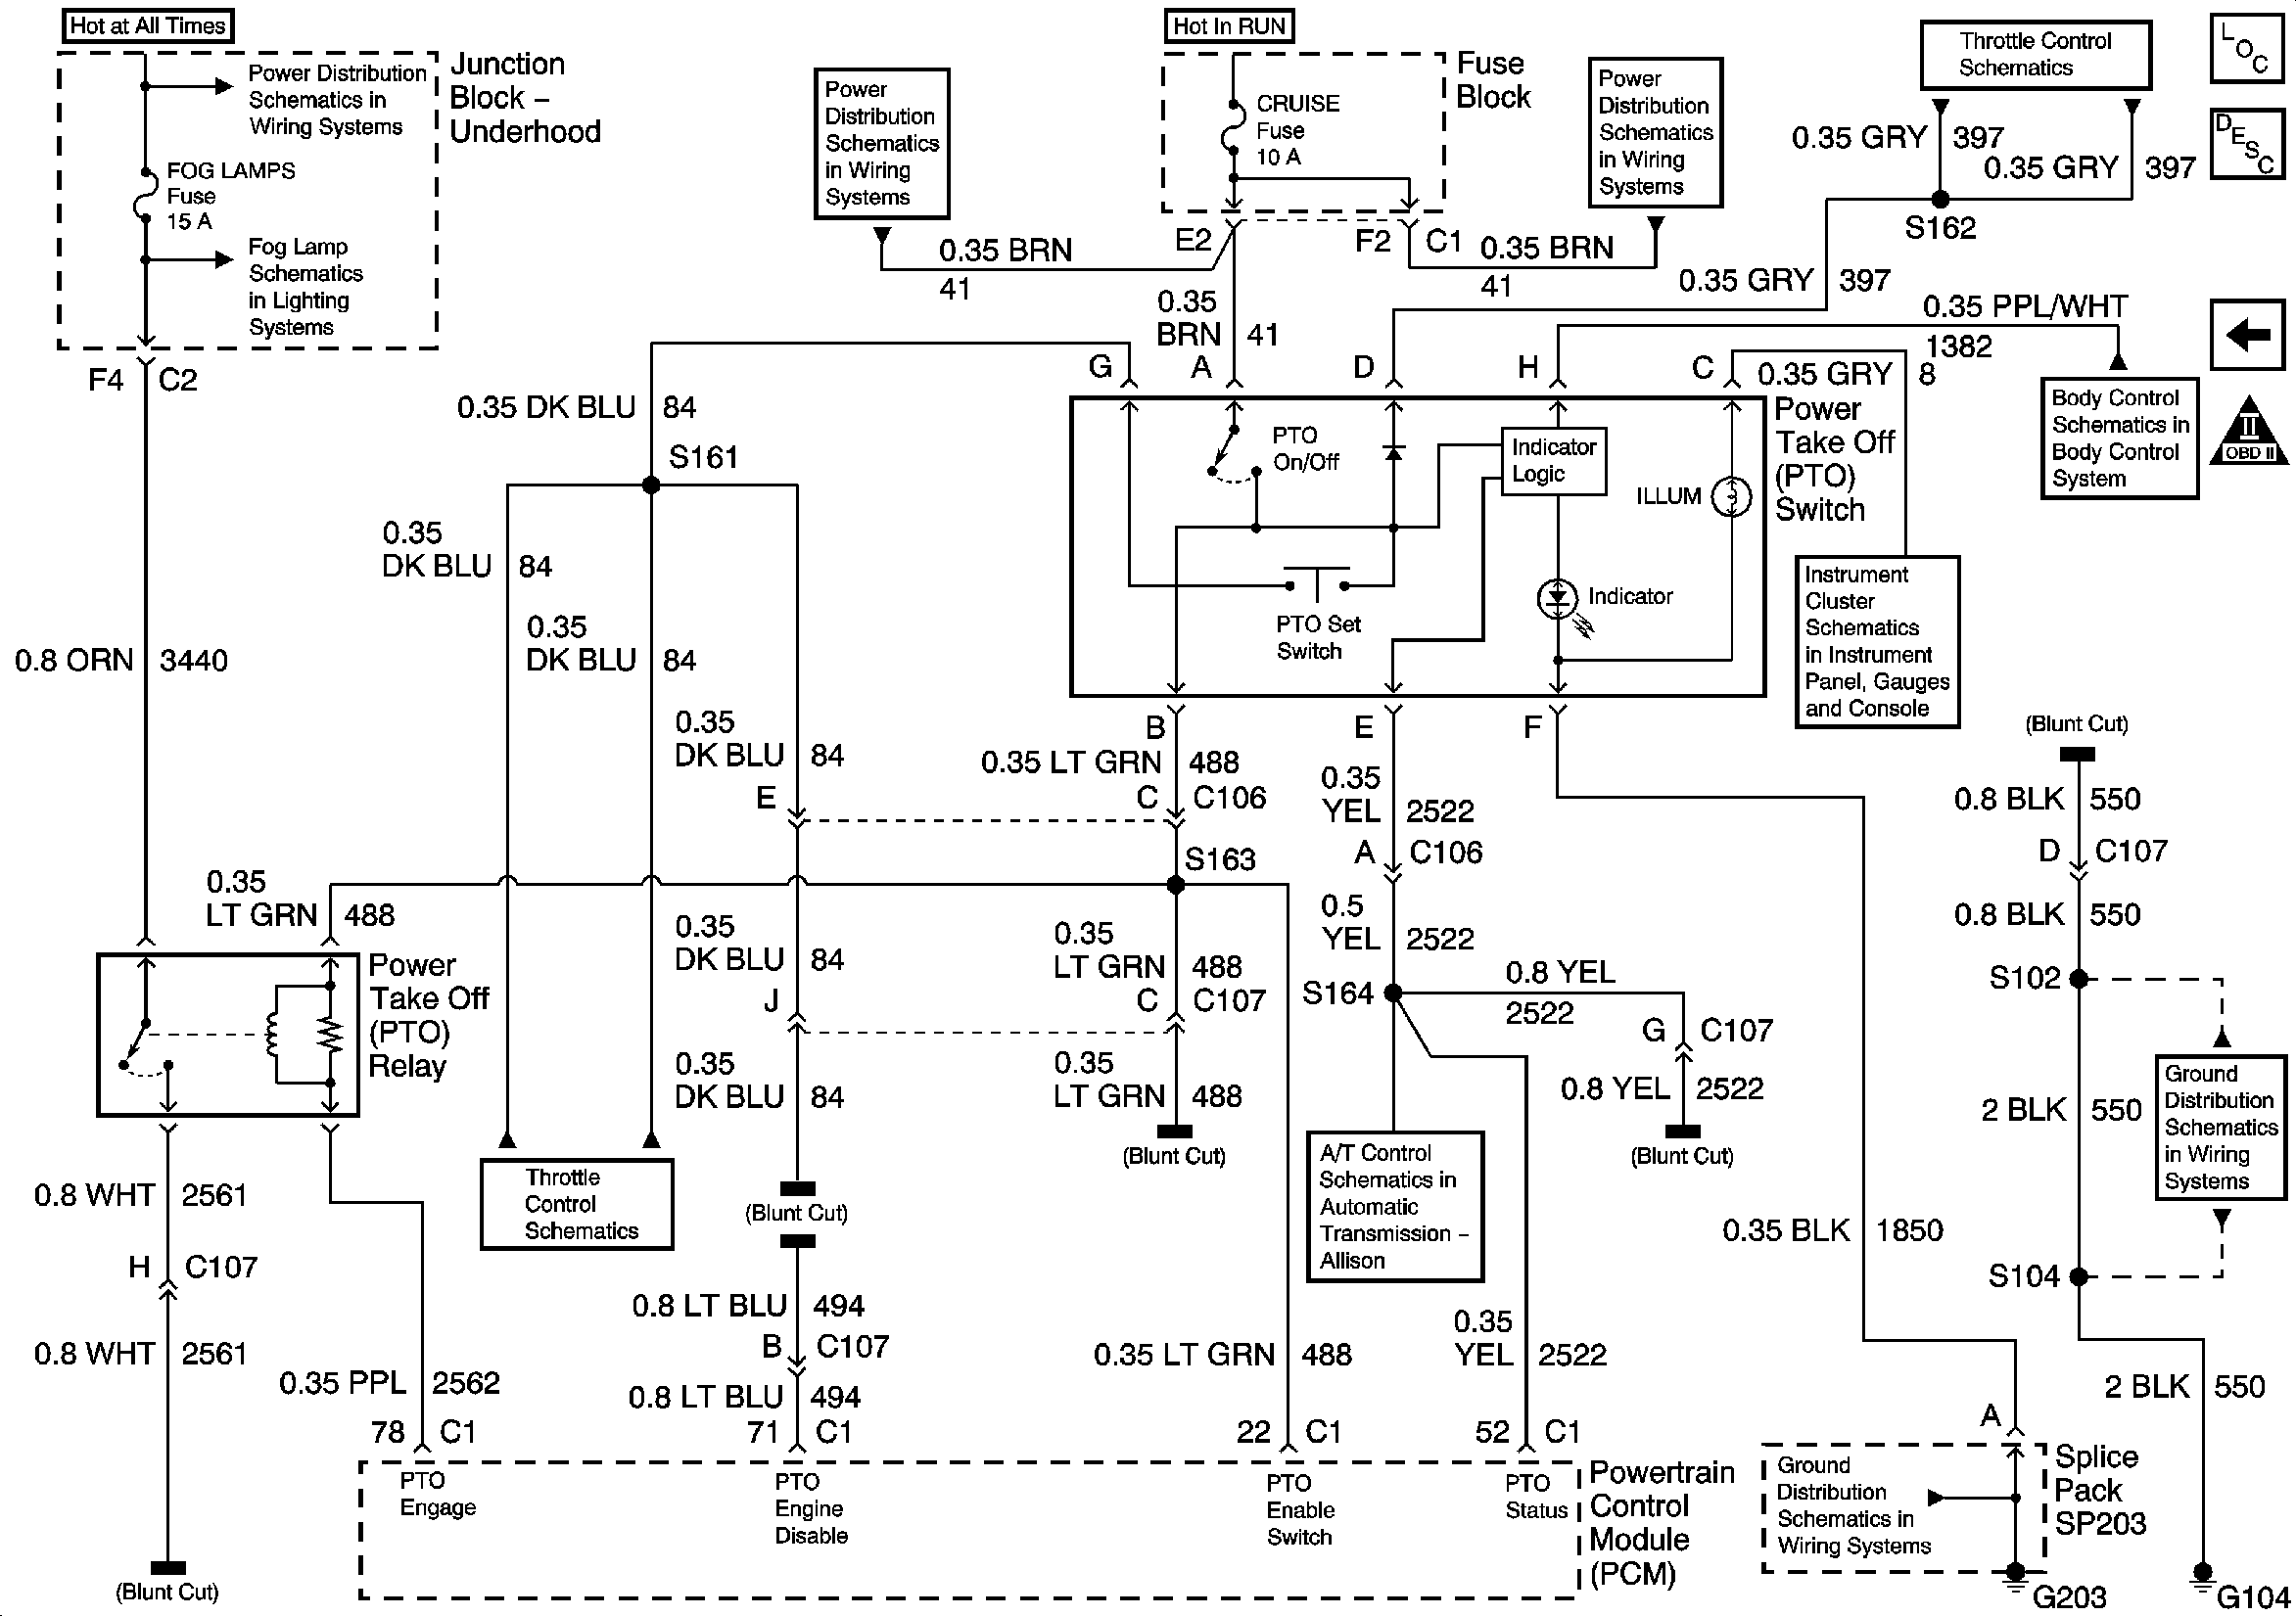 03 impala 3400 cam sensor wiring diagram